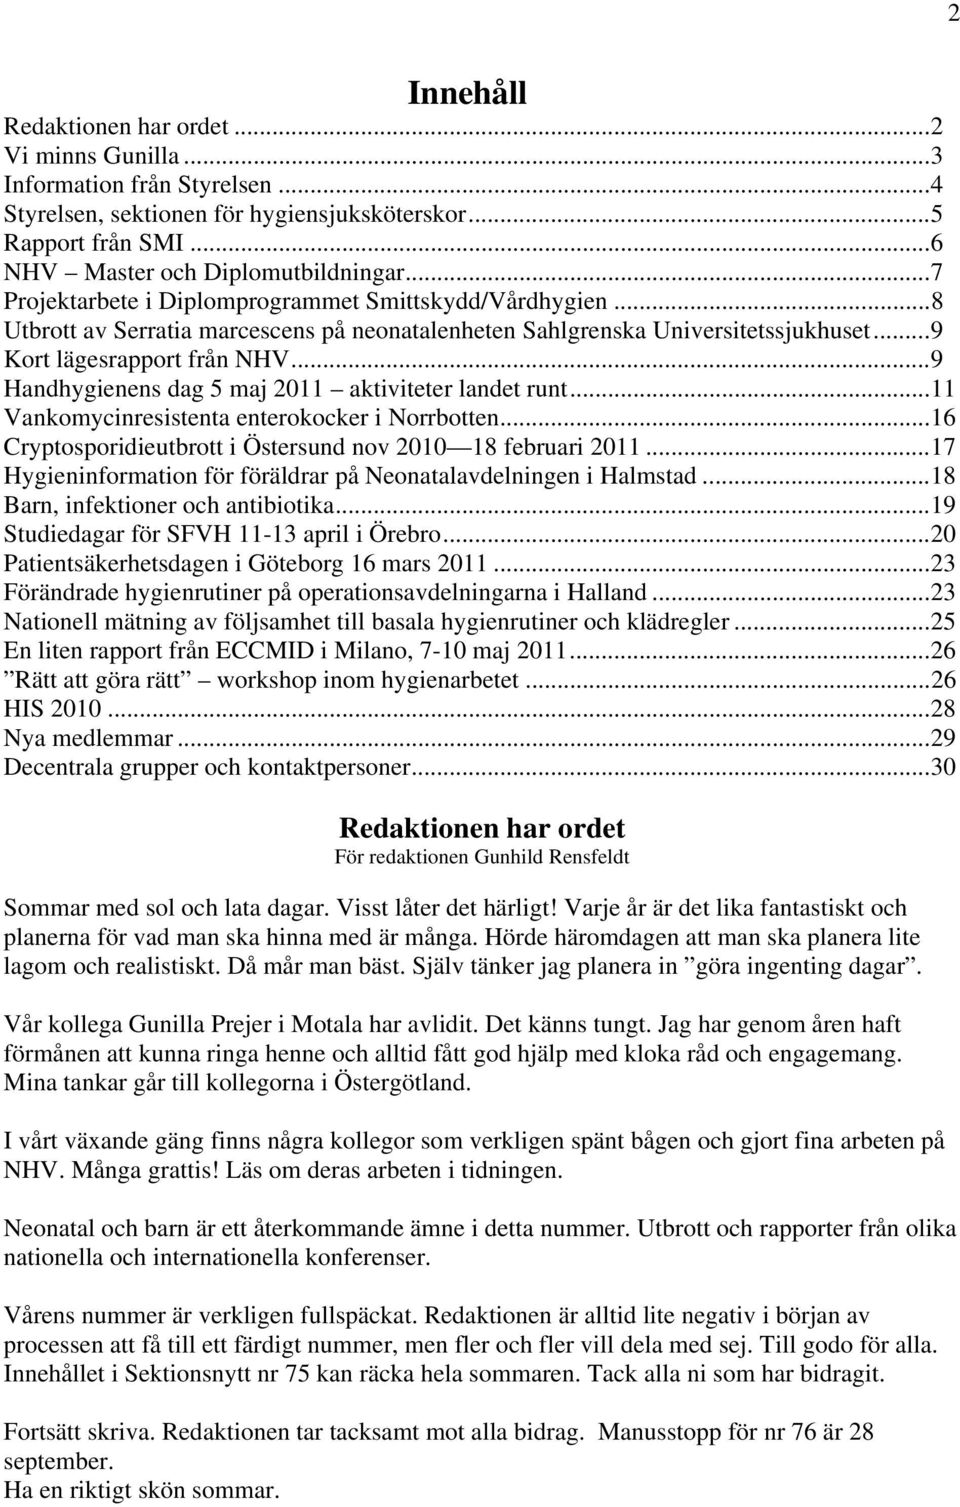 ..9 Handhygienens dag 5 maj 2011 aktiviteter landet runt...11 Vankomycinresistenta enterokocker i Norrbotten...16 Cryptosporidieutbrott i Östersund nov 2010 18 februari 2011.